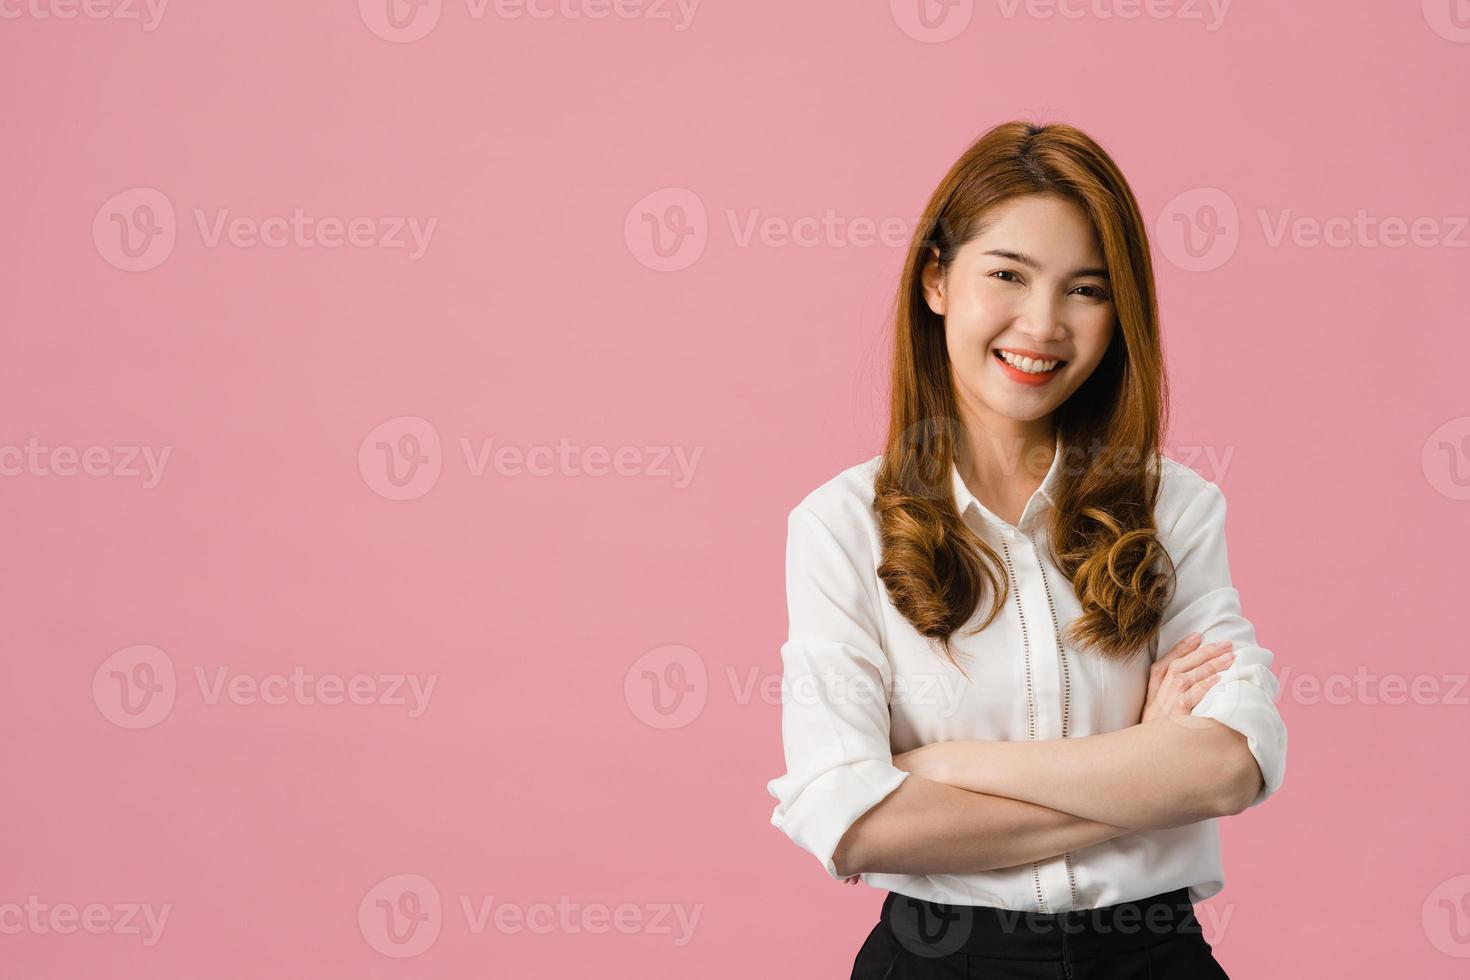 Retrato de joven asiática con expresión positiva, brazos cruzados, sonrisa amplia, vestida con ropa casual y mirando a cámara sobre fondo rosa. feliz adorable mujer alegre se regocija con el éxito. foto